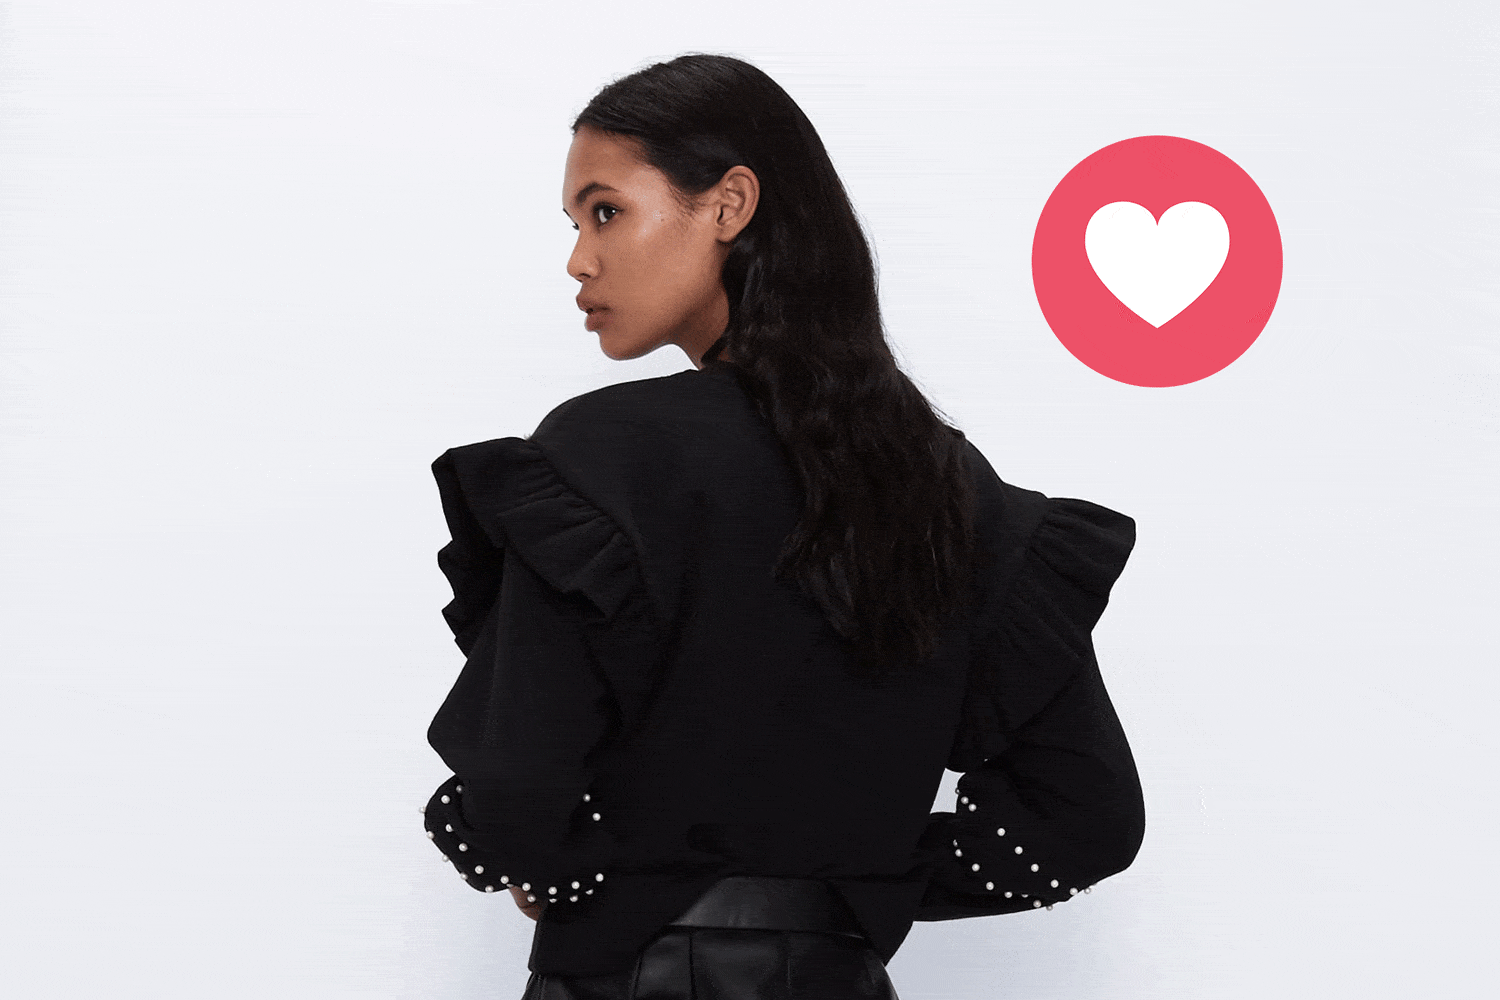 Cortar Hay una tendencia exterior Zara lanza una sudadera negra con volantes de moda en 2020